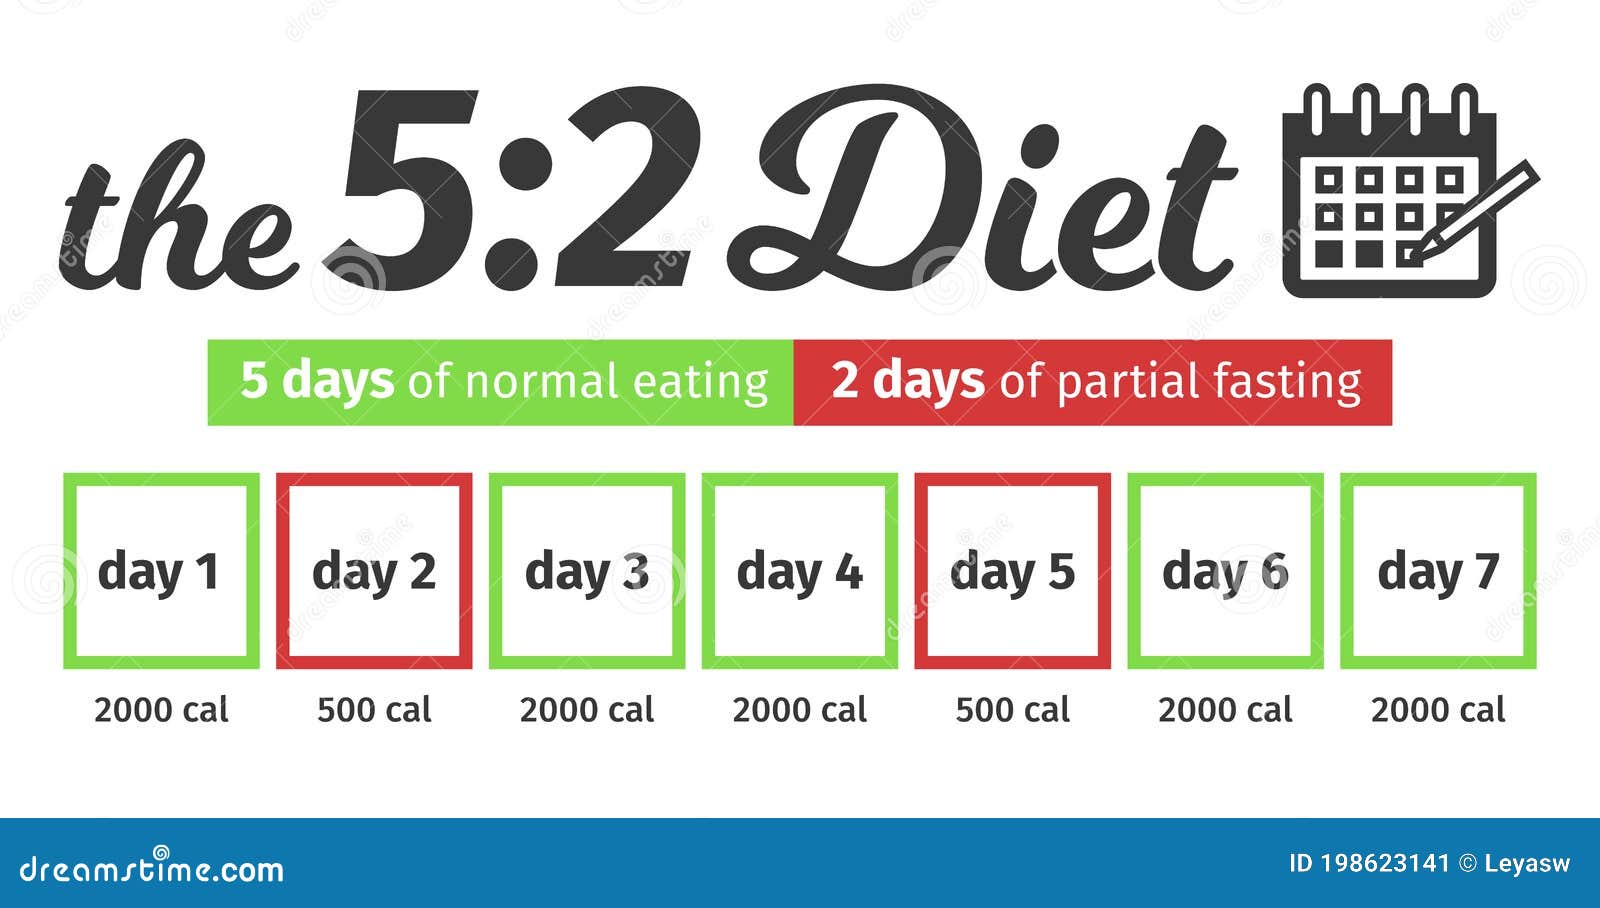 Dieta 5:2 â cum se tine aceasta dieta, ce rezultate are, dar si contraindicatii